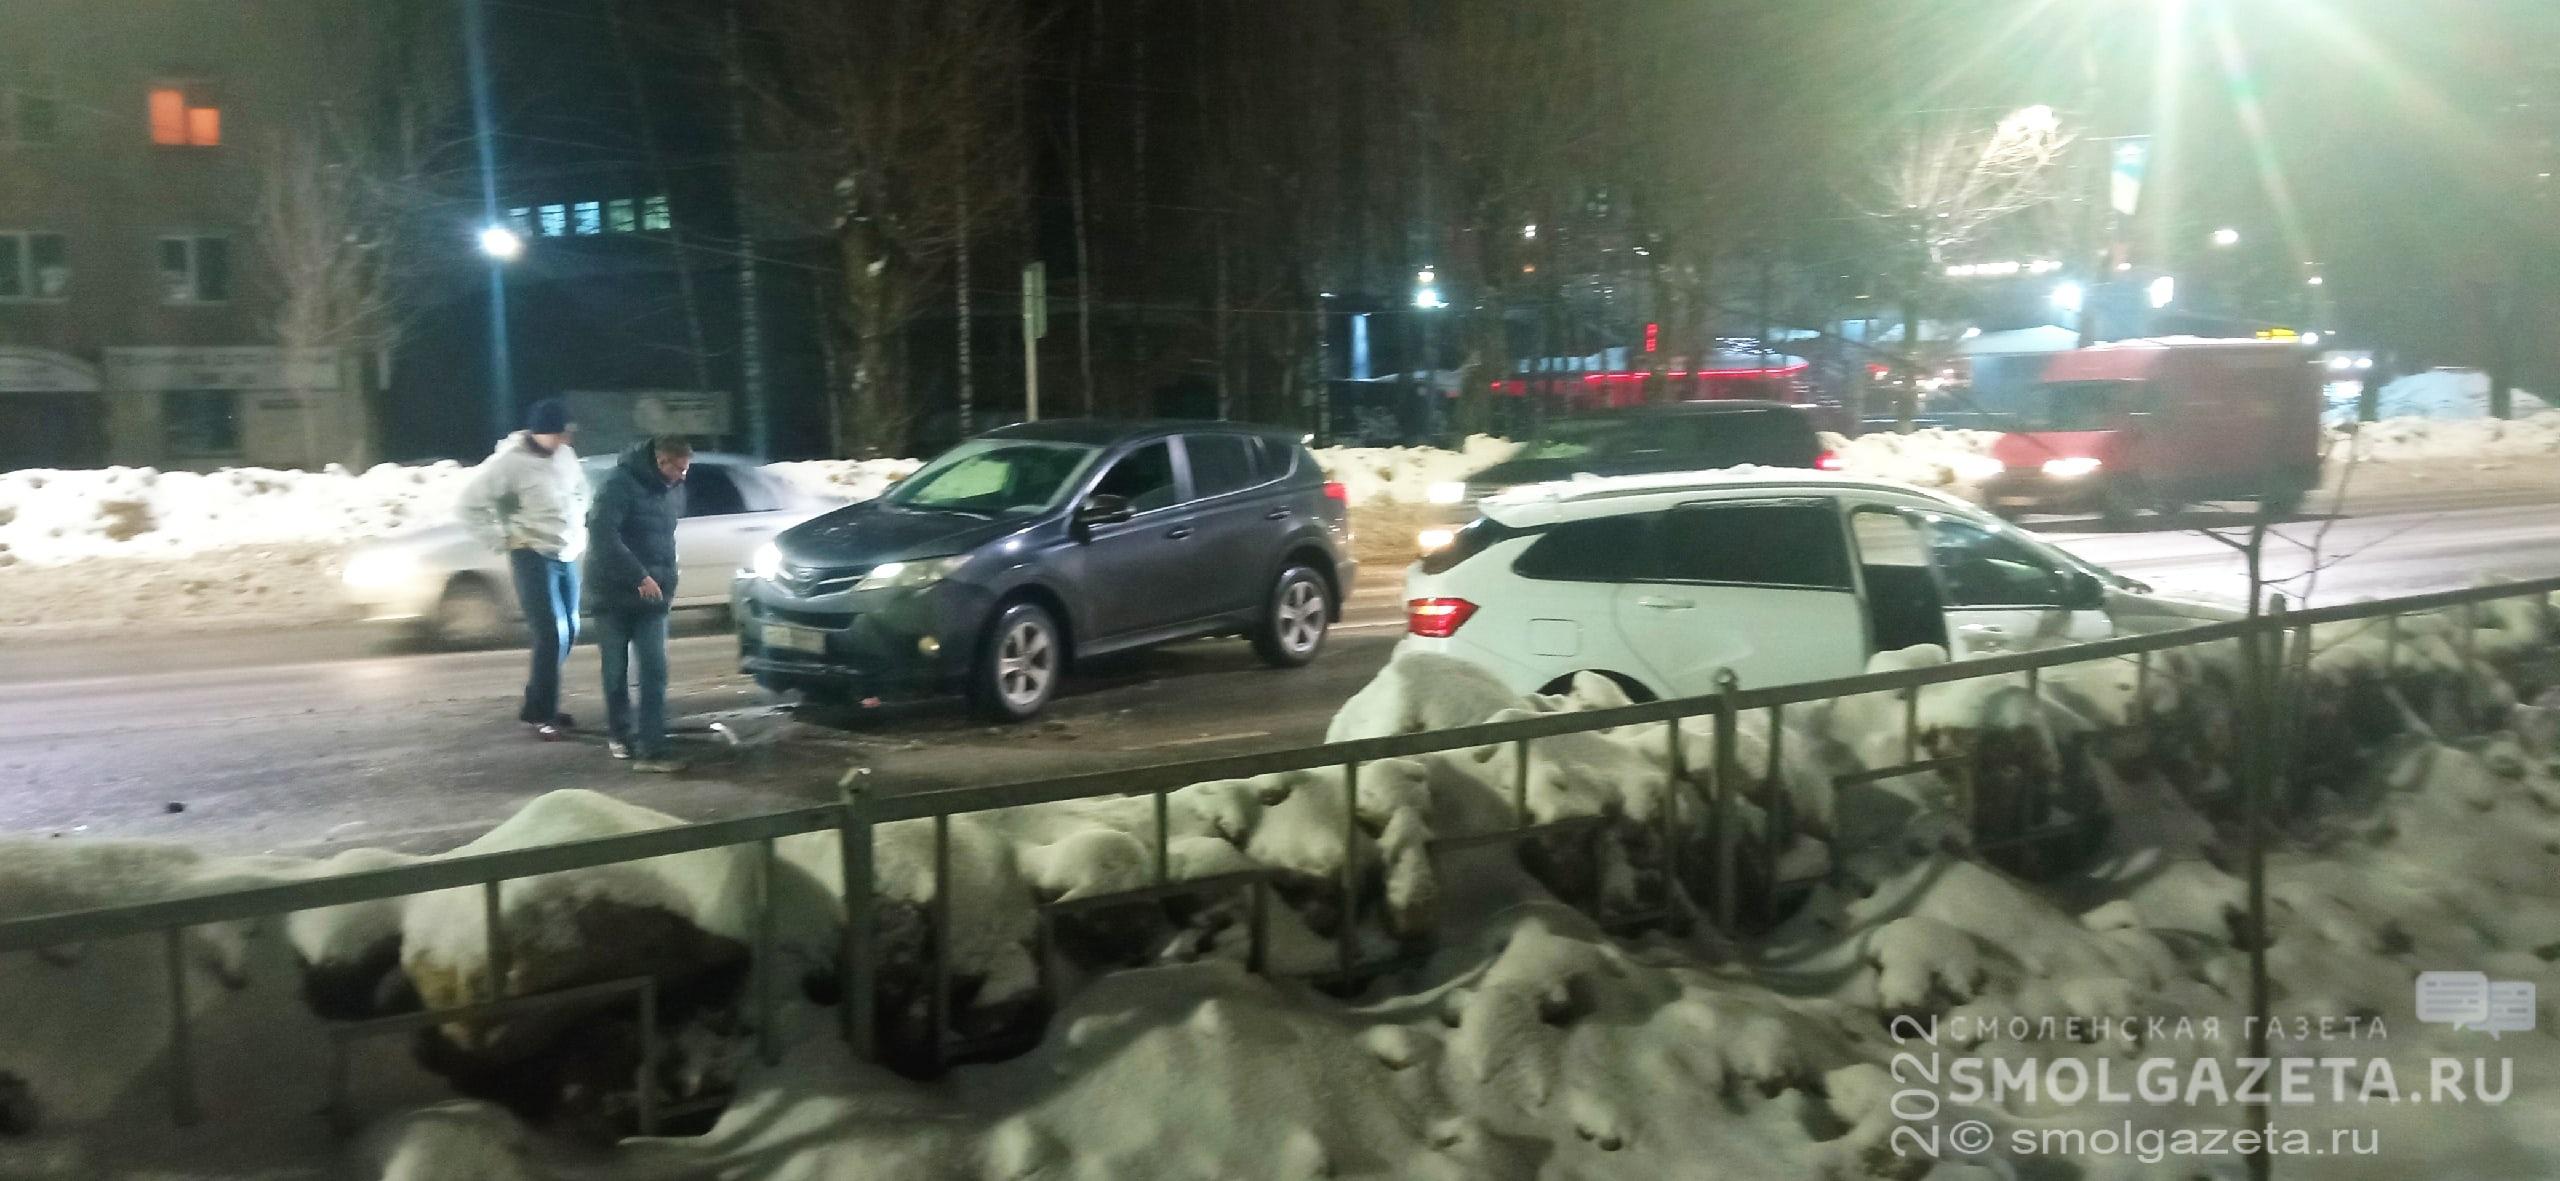 В Смоленске авария на улице Николаева спровоцировала затор